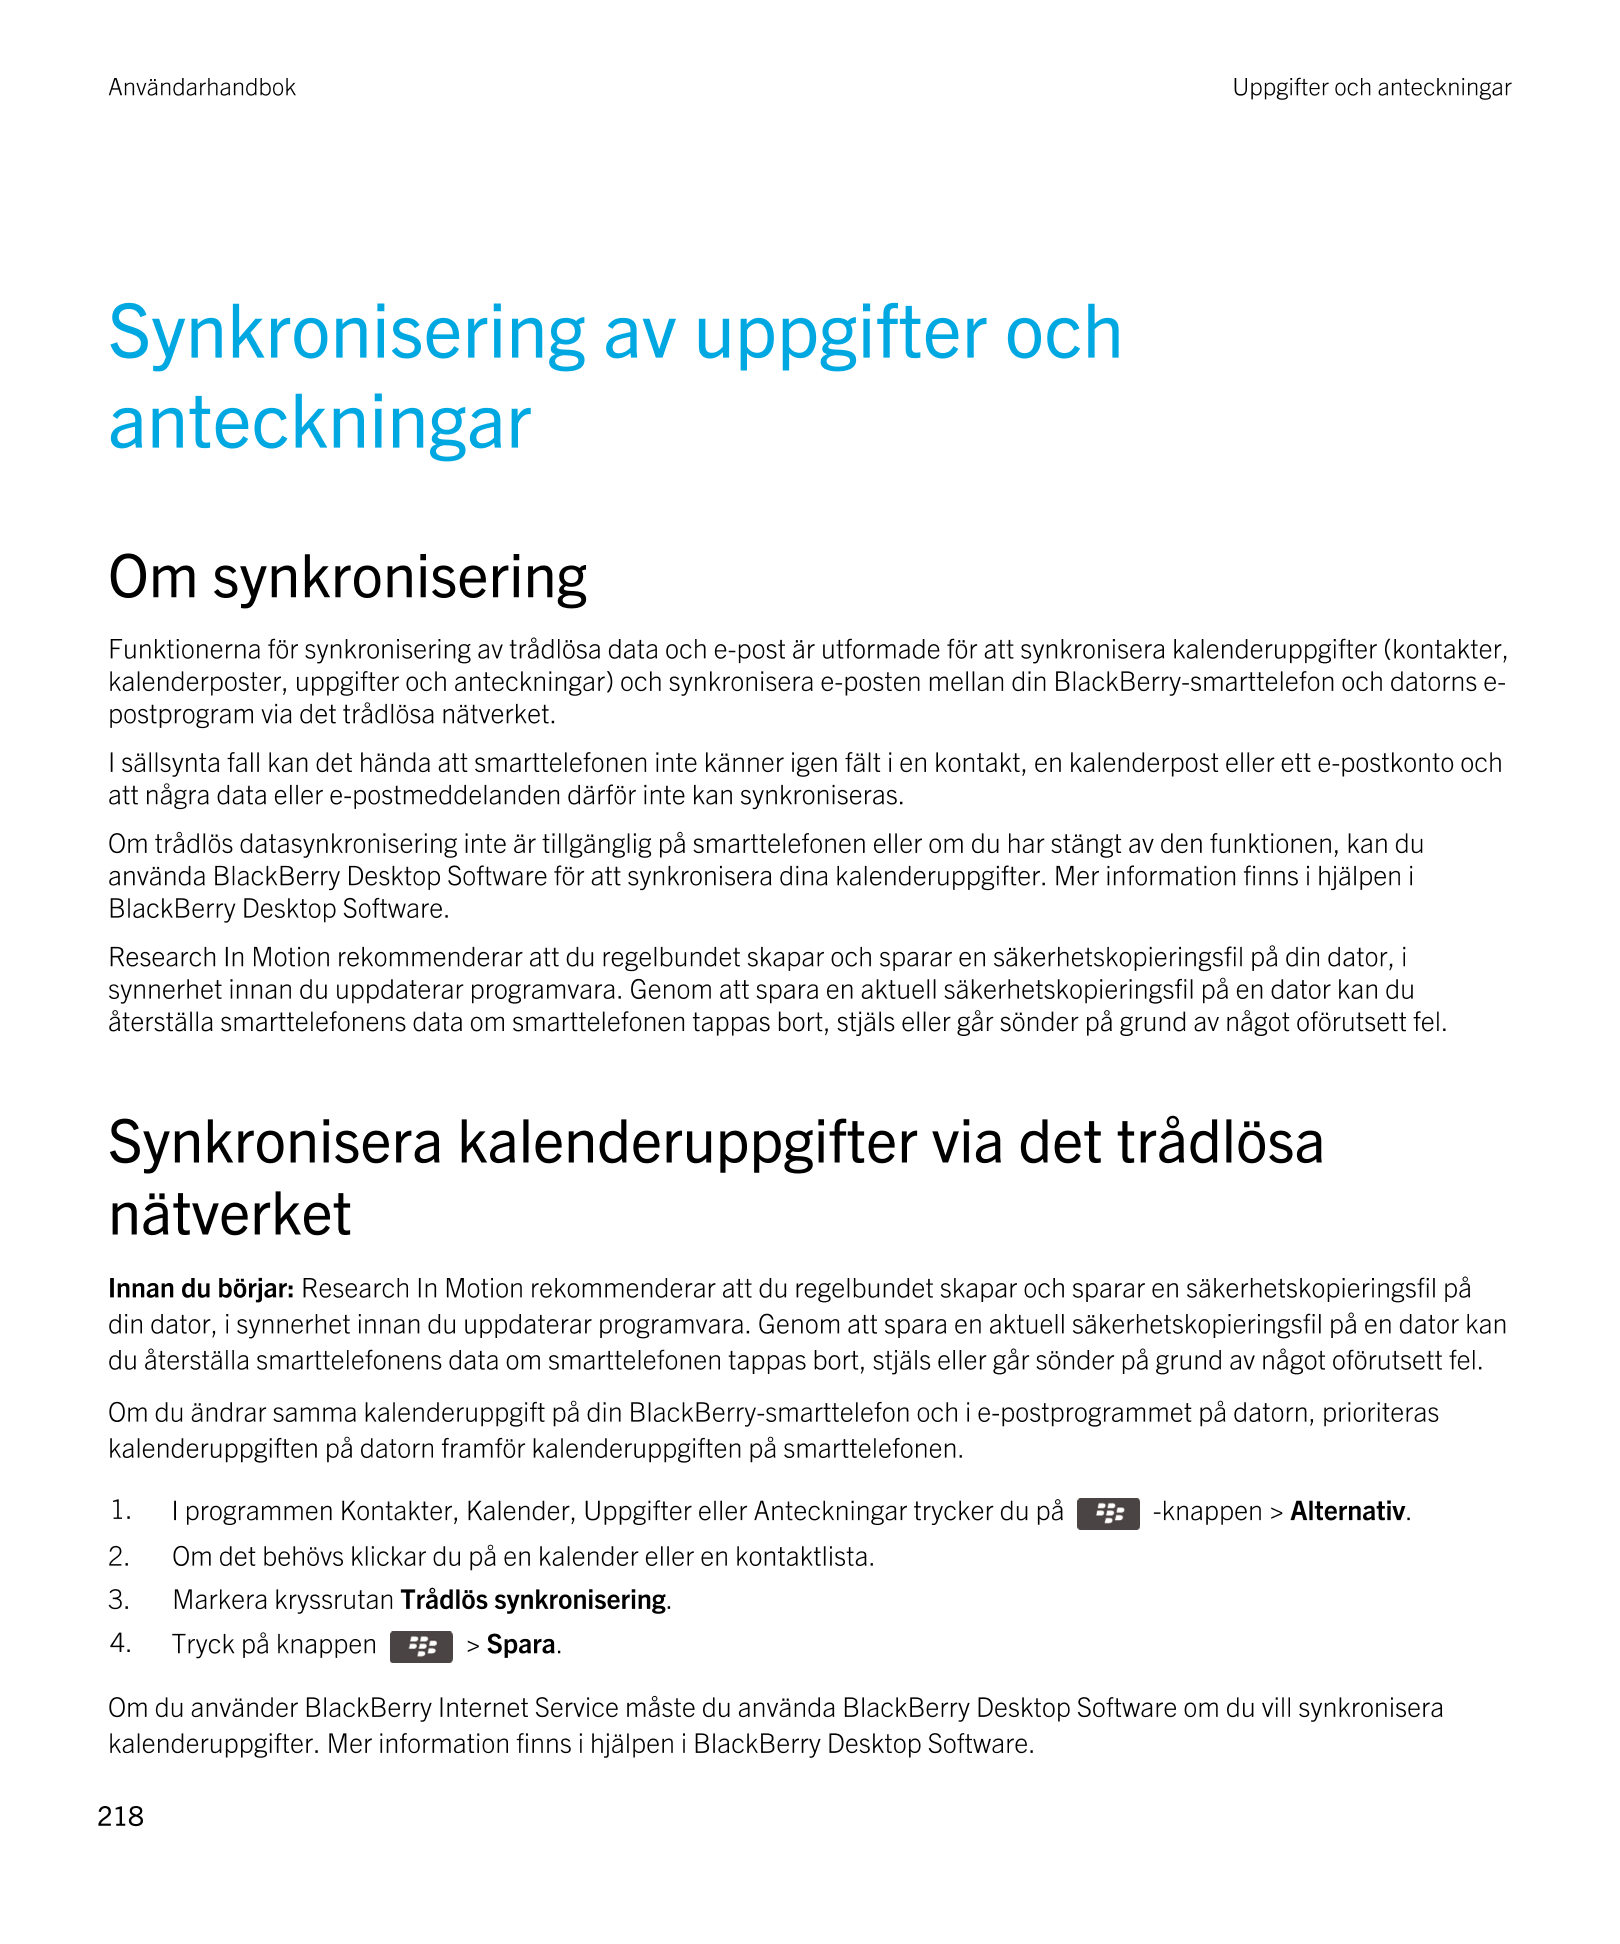 Användarhandbok Uppgifter och anteckningar
Synkronisering av uppgifter och 
anteckningar
Om synkronisering
Funktionerna för synk